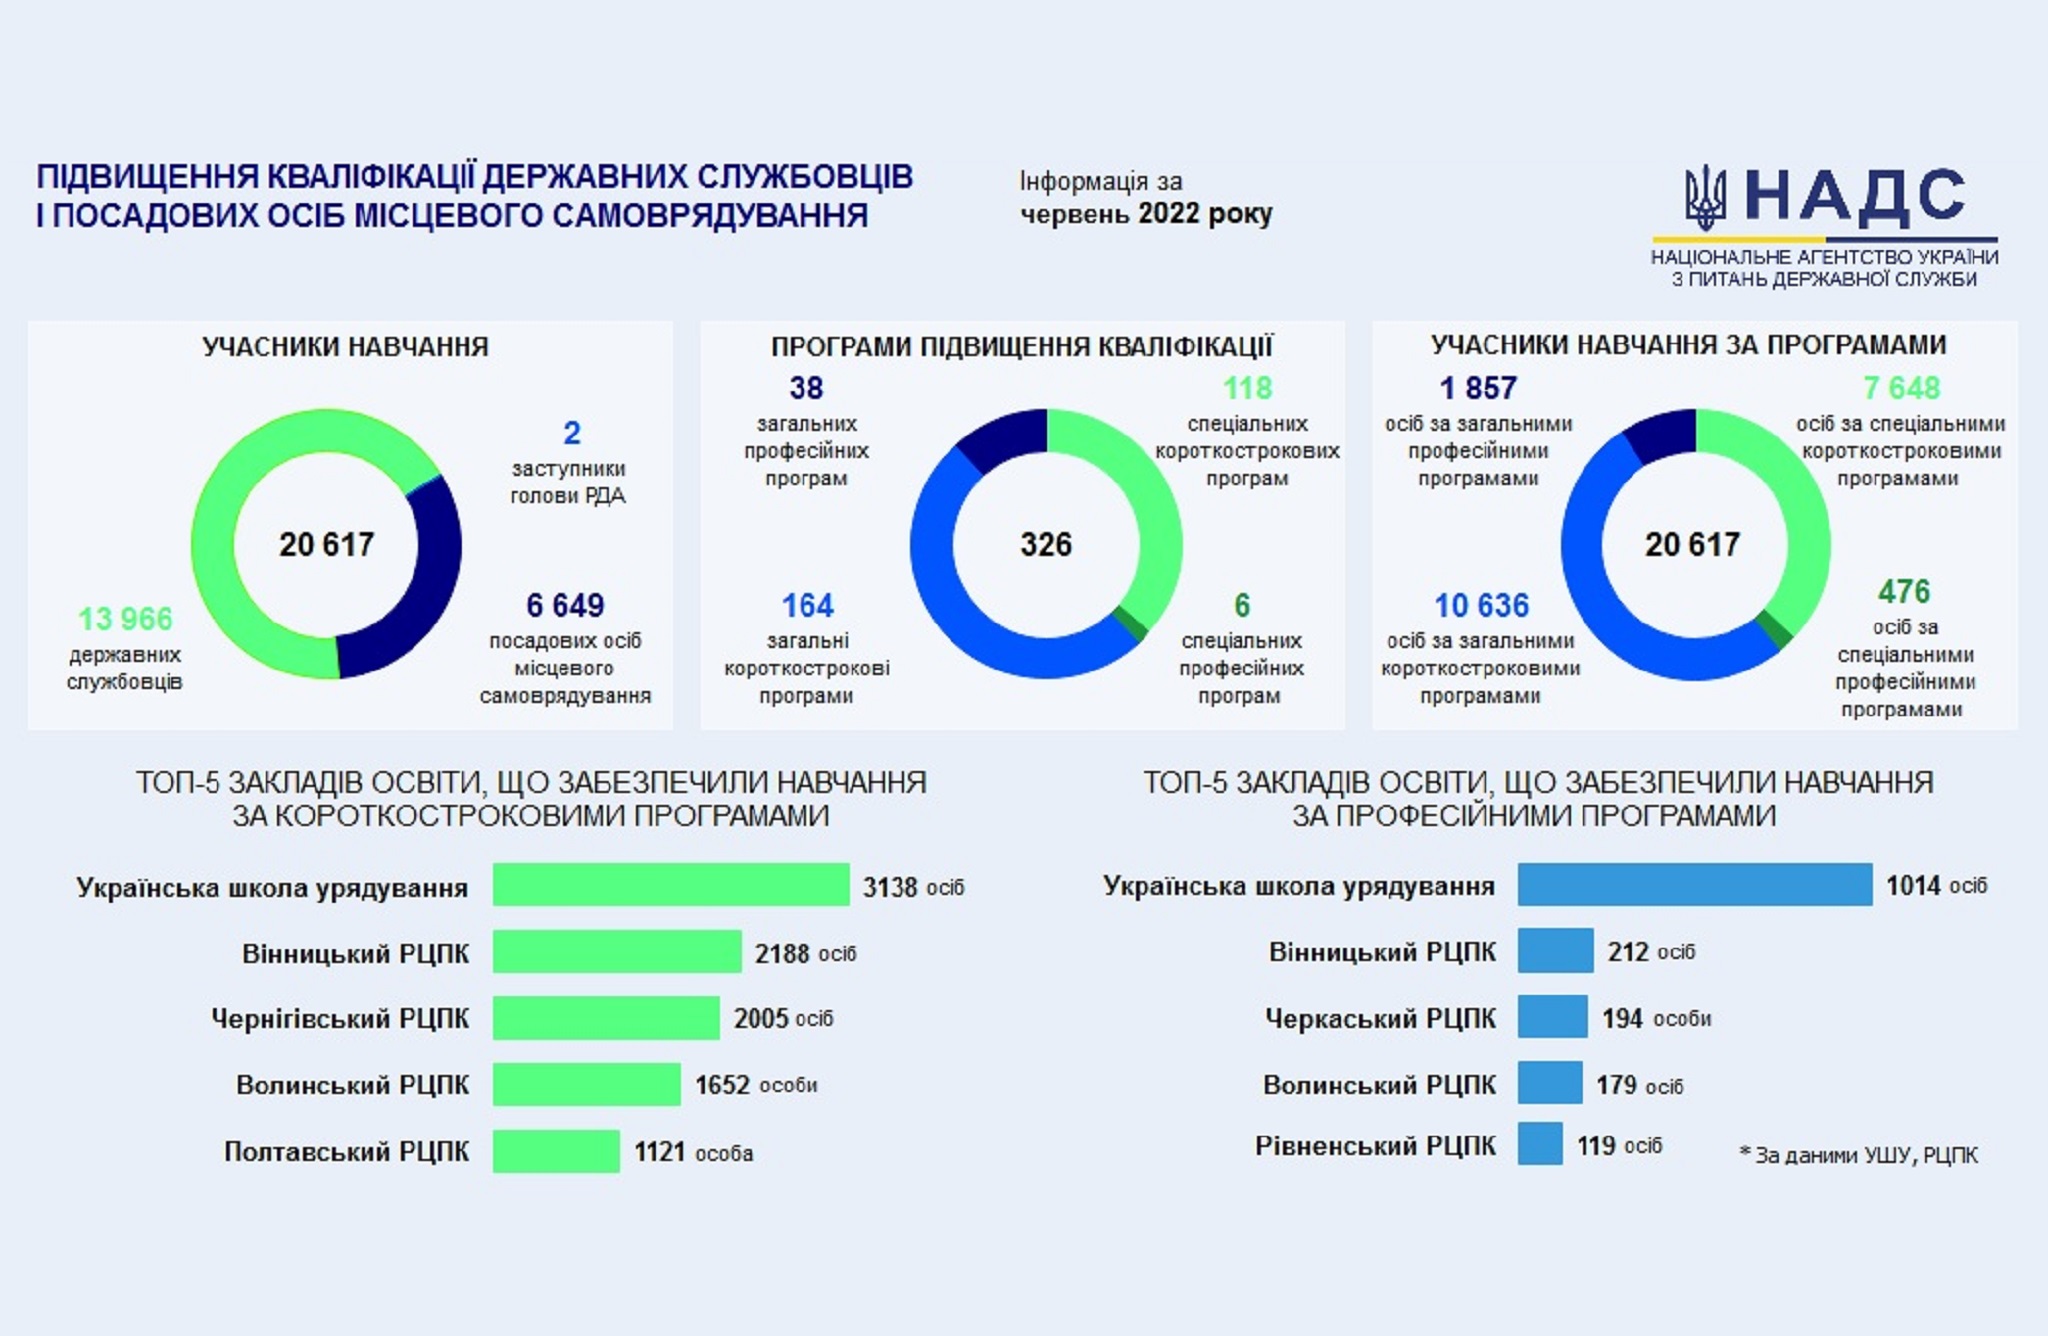 Впродовж червня понад 20 тисяч публічних службовців пройшли навчання в Українській школі урядування та регіональних центрах підвищення кваліфікації